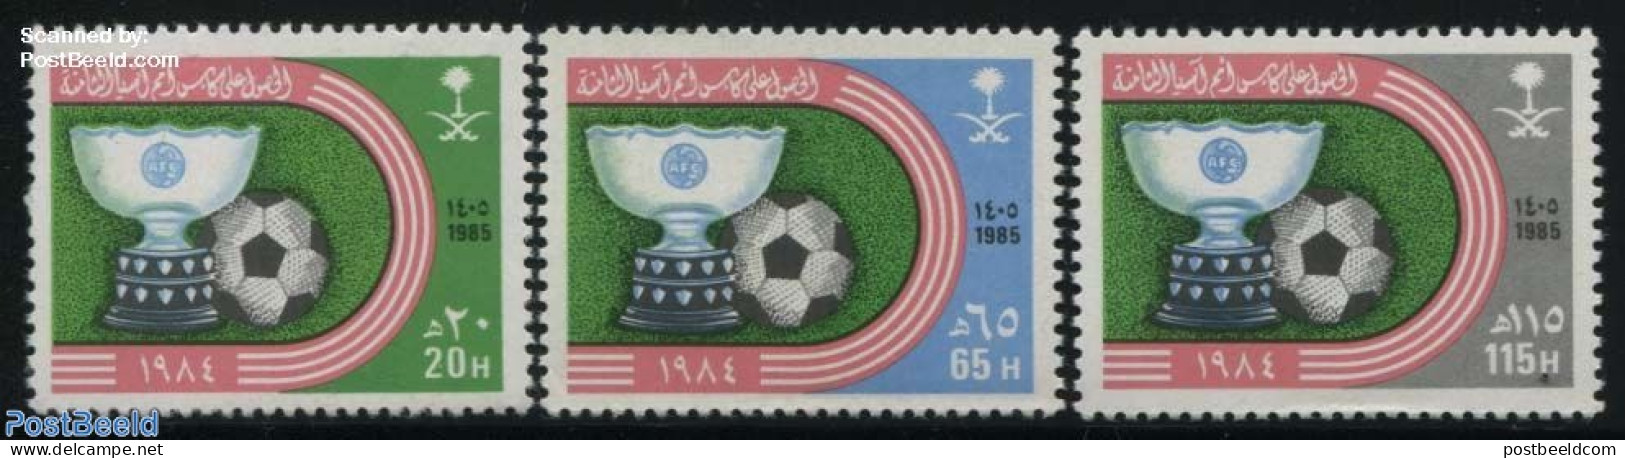 Saudi Arabia 1985 Asian Football Champion 3v, Mint NH, Sport - Football - Saudi-Arabien